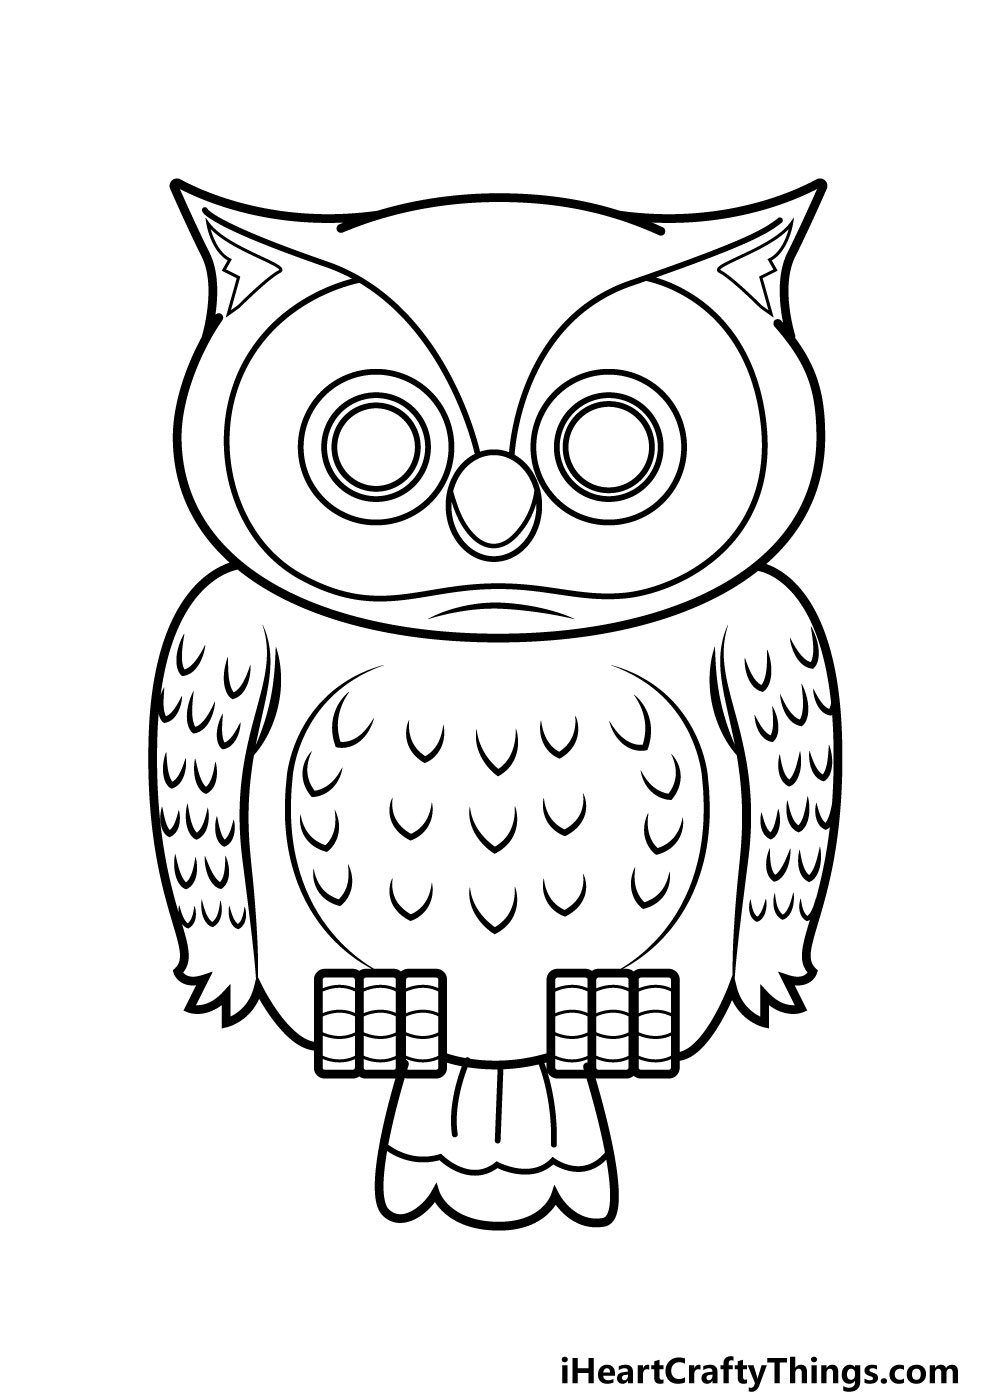 Drawing Owl Step 8 - Hướng dẫn chi tiết cách vẽ cú mèo đơn giản gồm 9 bước cơ bản